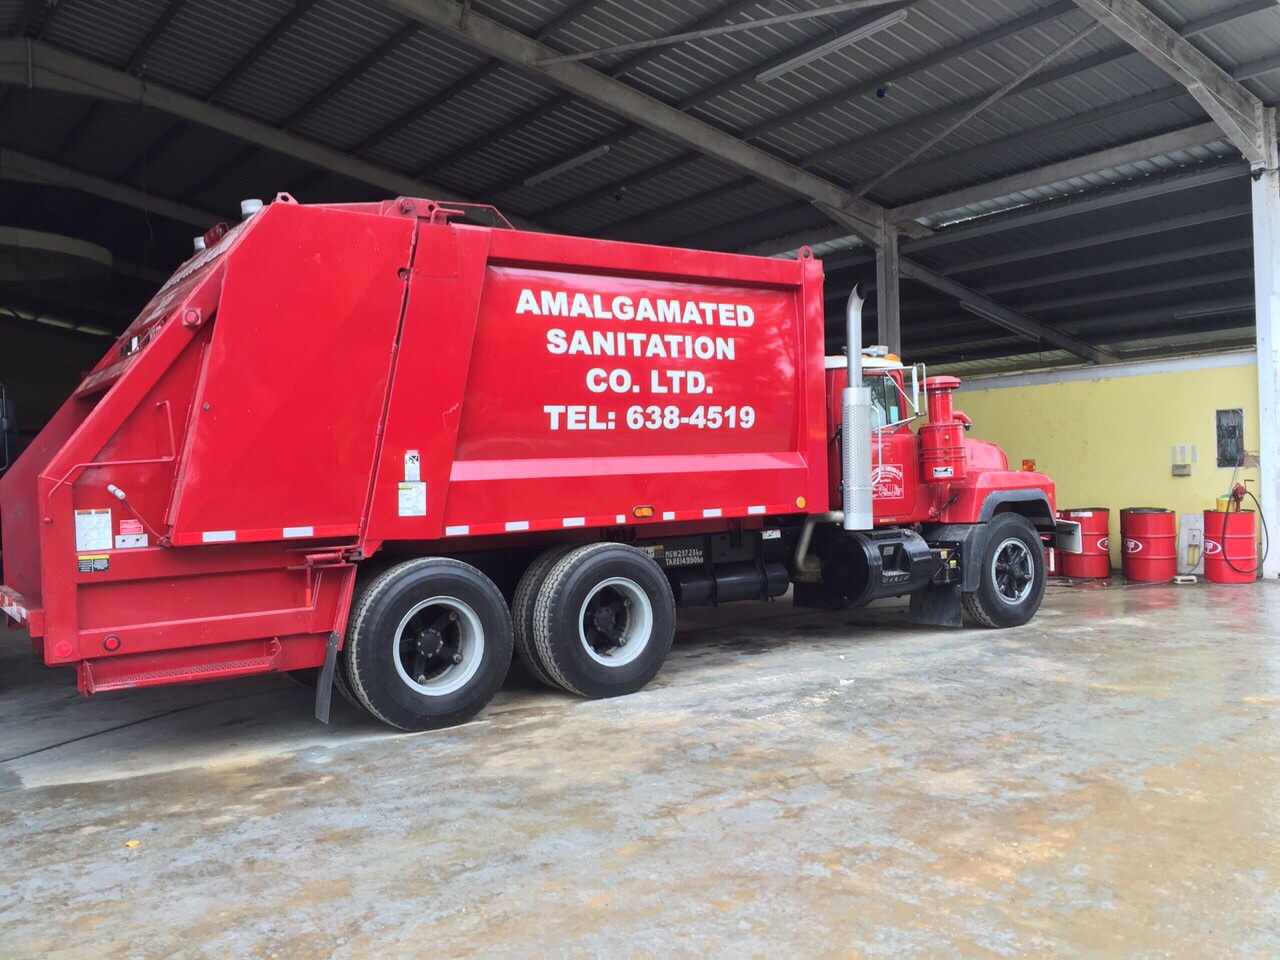 Amalgamated Sanitation Co Ltd - TRANSPORT SERVICE